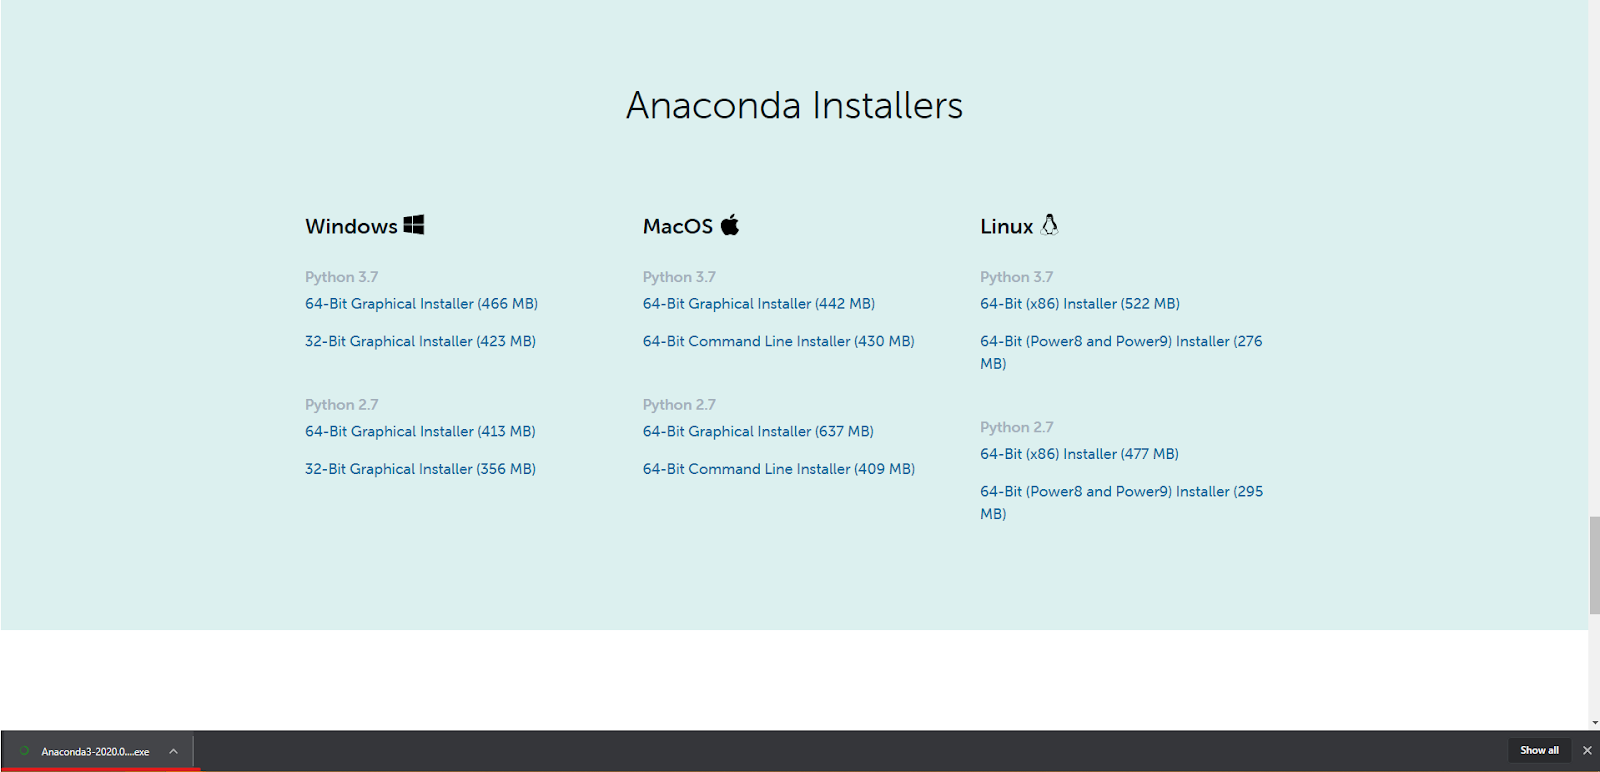 Running the Anaconda installer